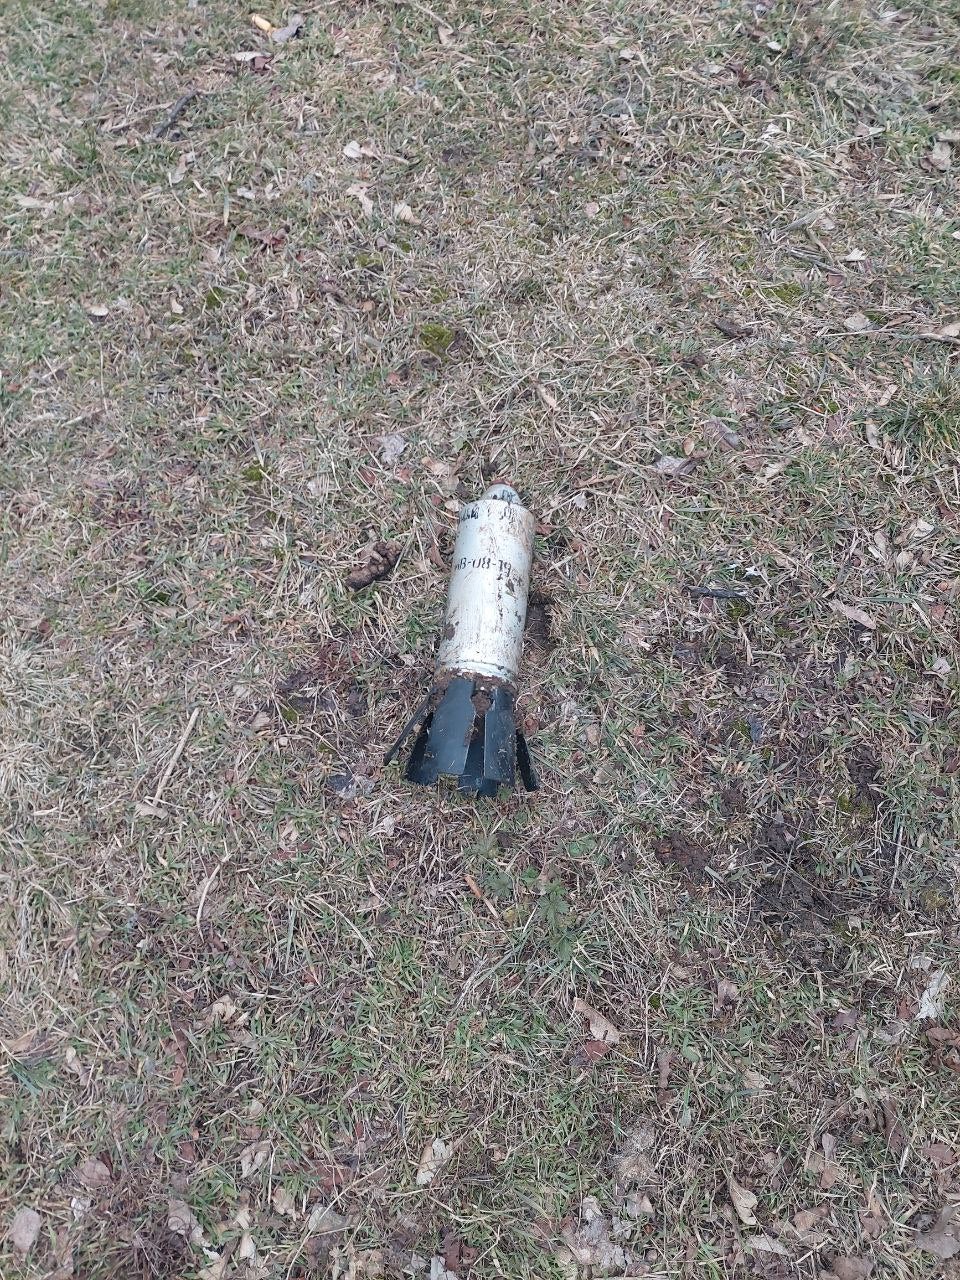 ハリコフで見つかった不発の9N235破片子弾 